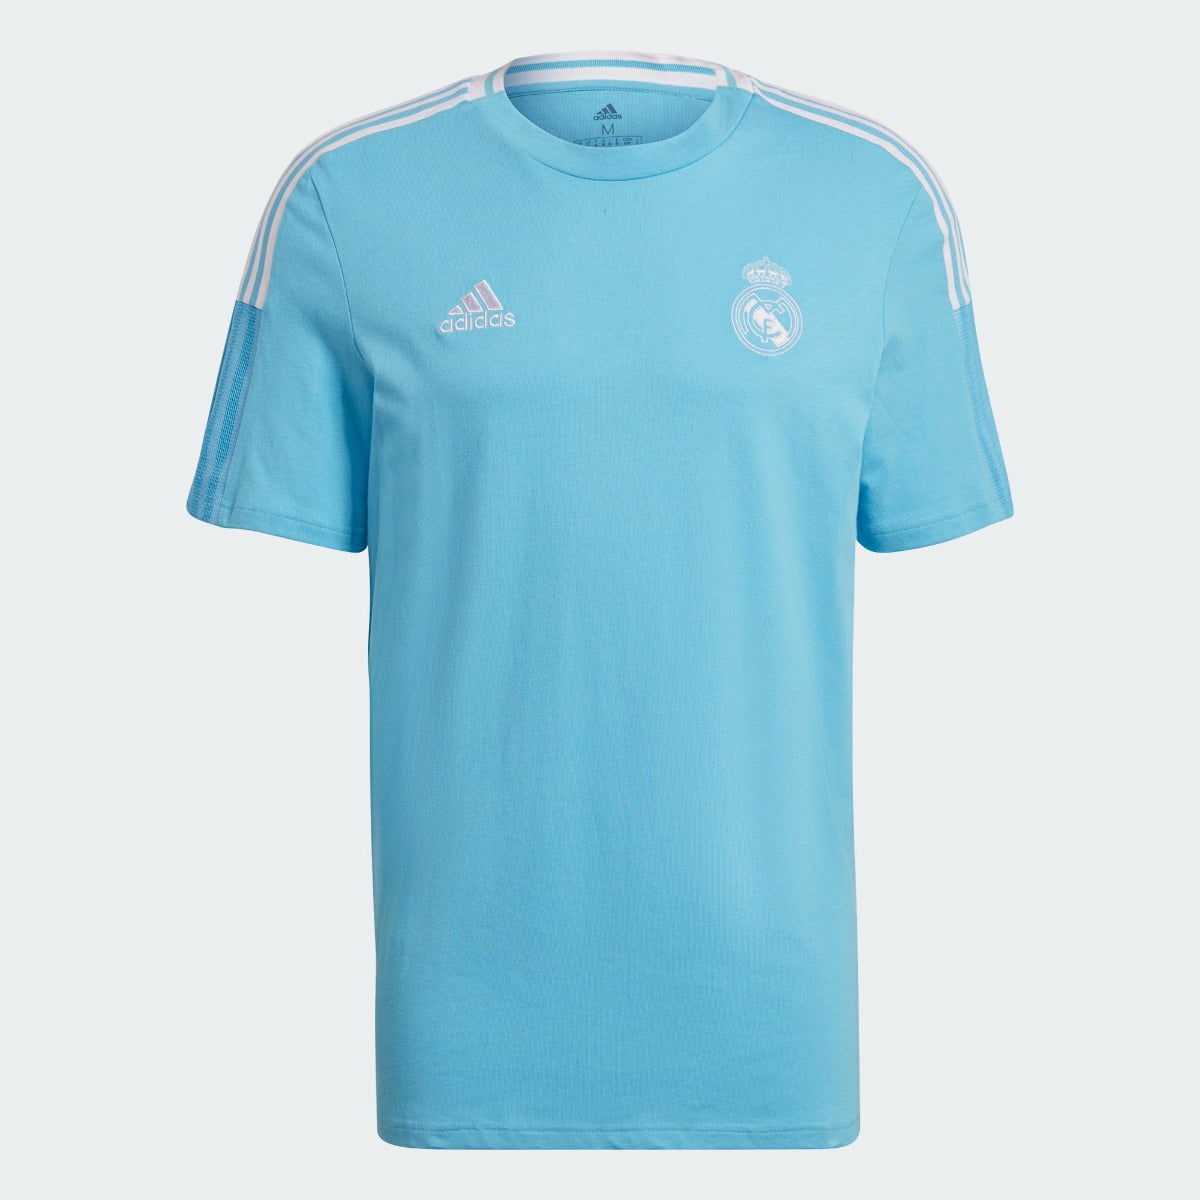 Adidas 2021 Real Madrid Tee Shirt - Bright Cyan (Front)